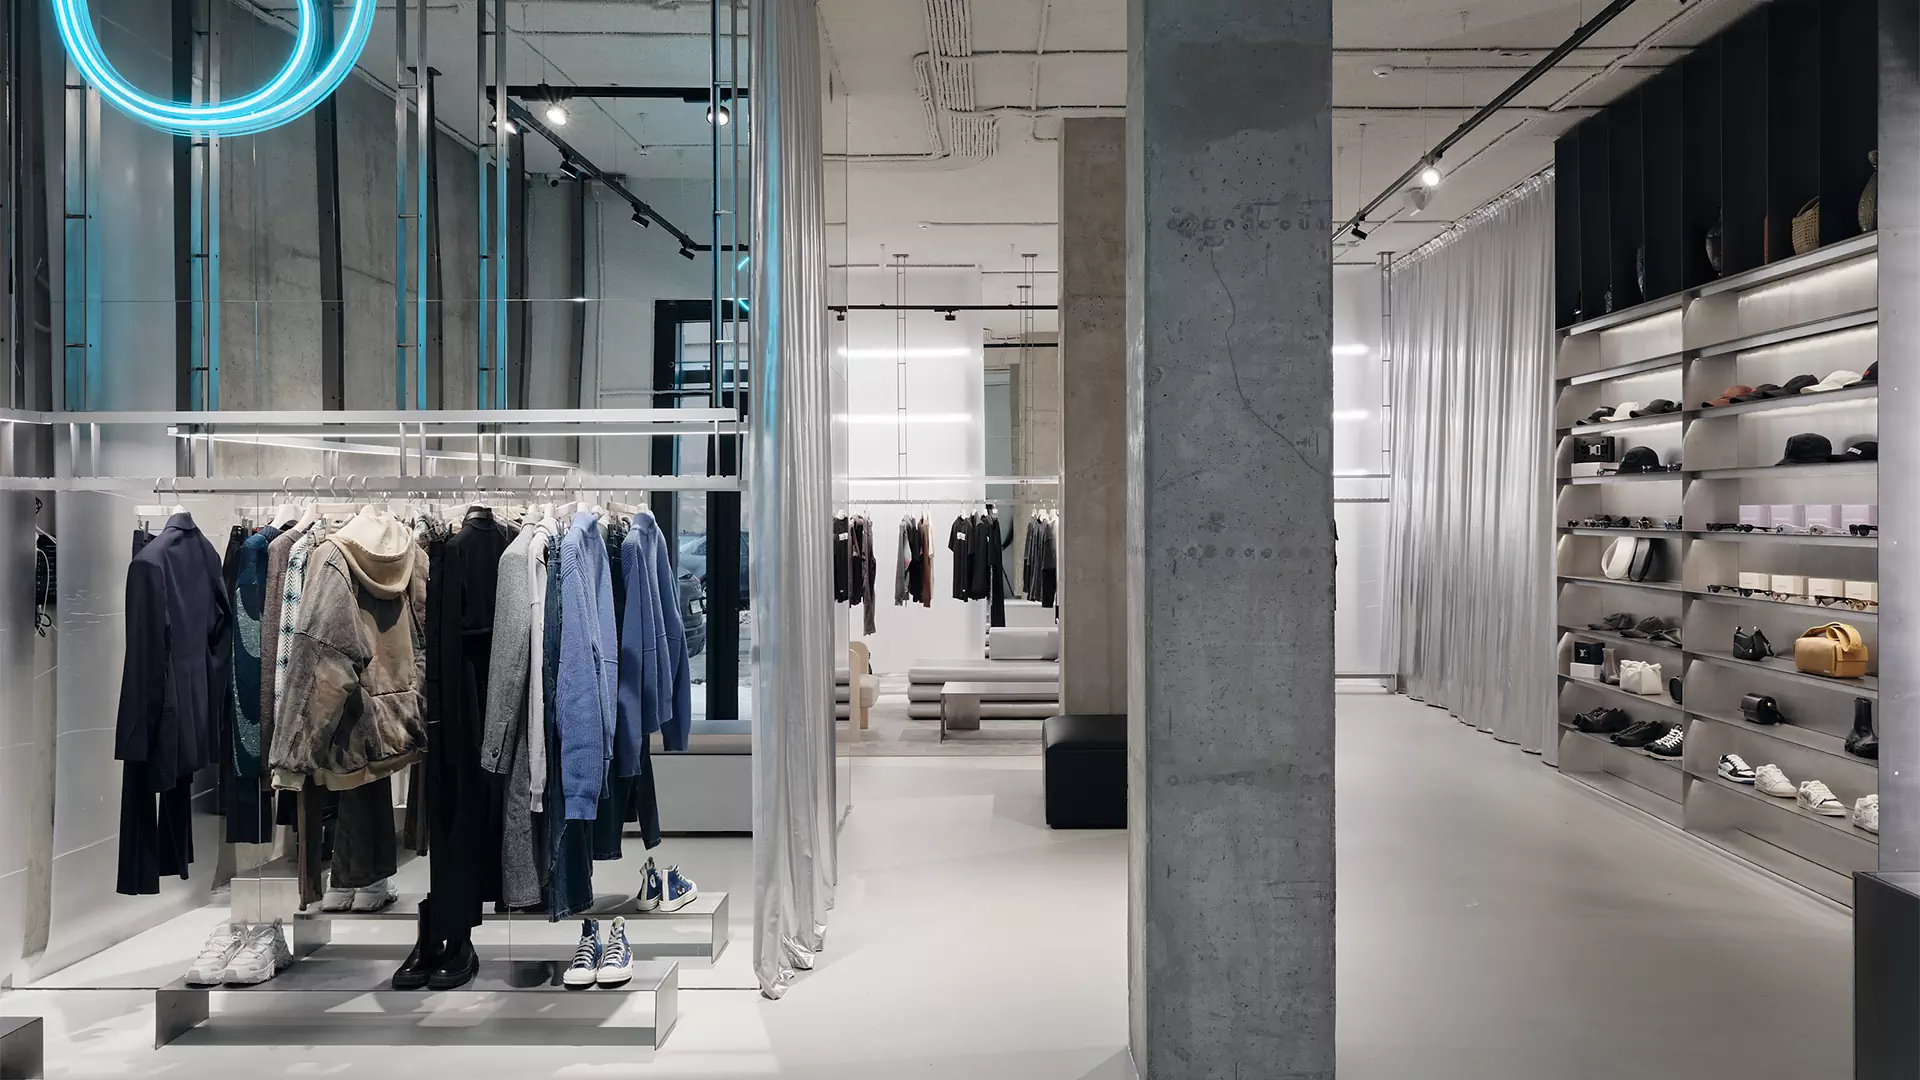 Брутальный бетон, неон и холодный металл в интерьере концептуального шоурума одежды — проект RYMAR.studio